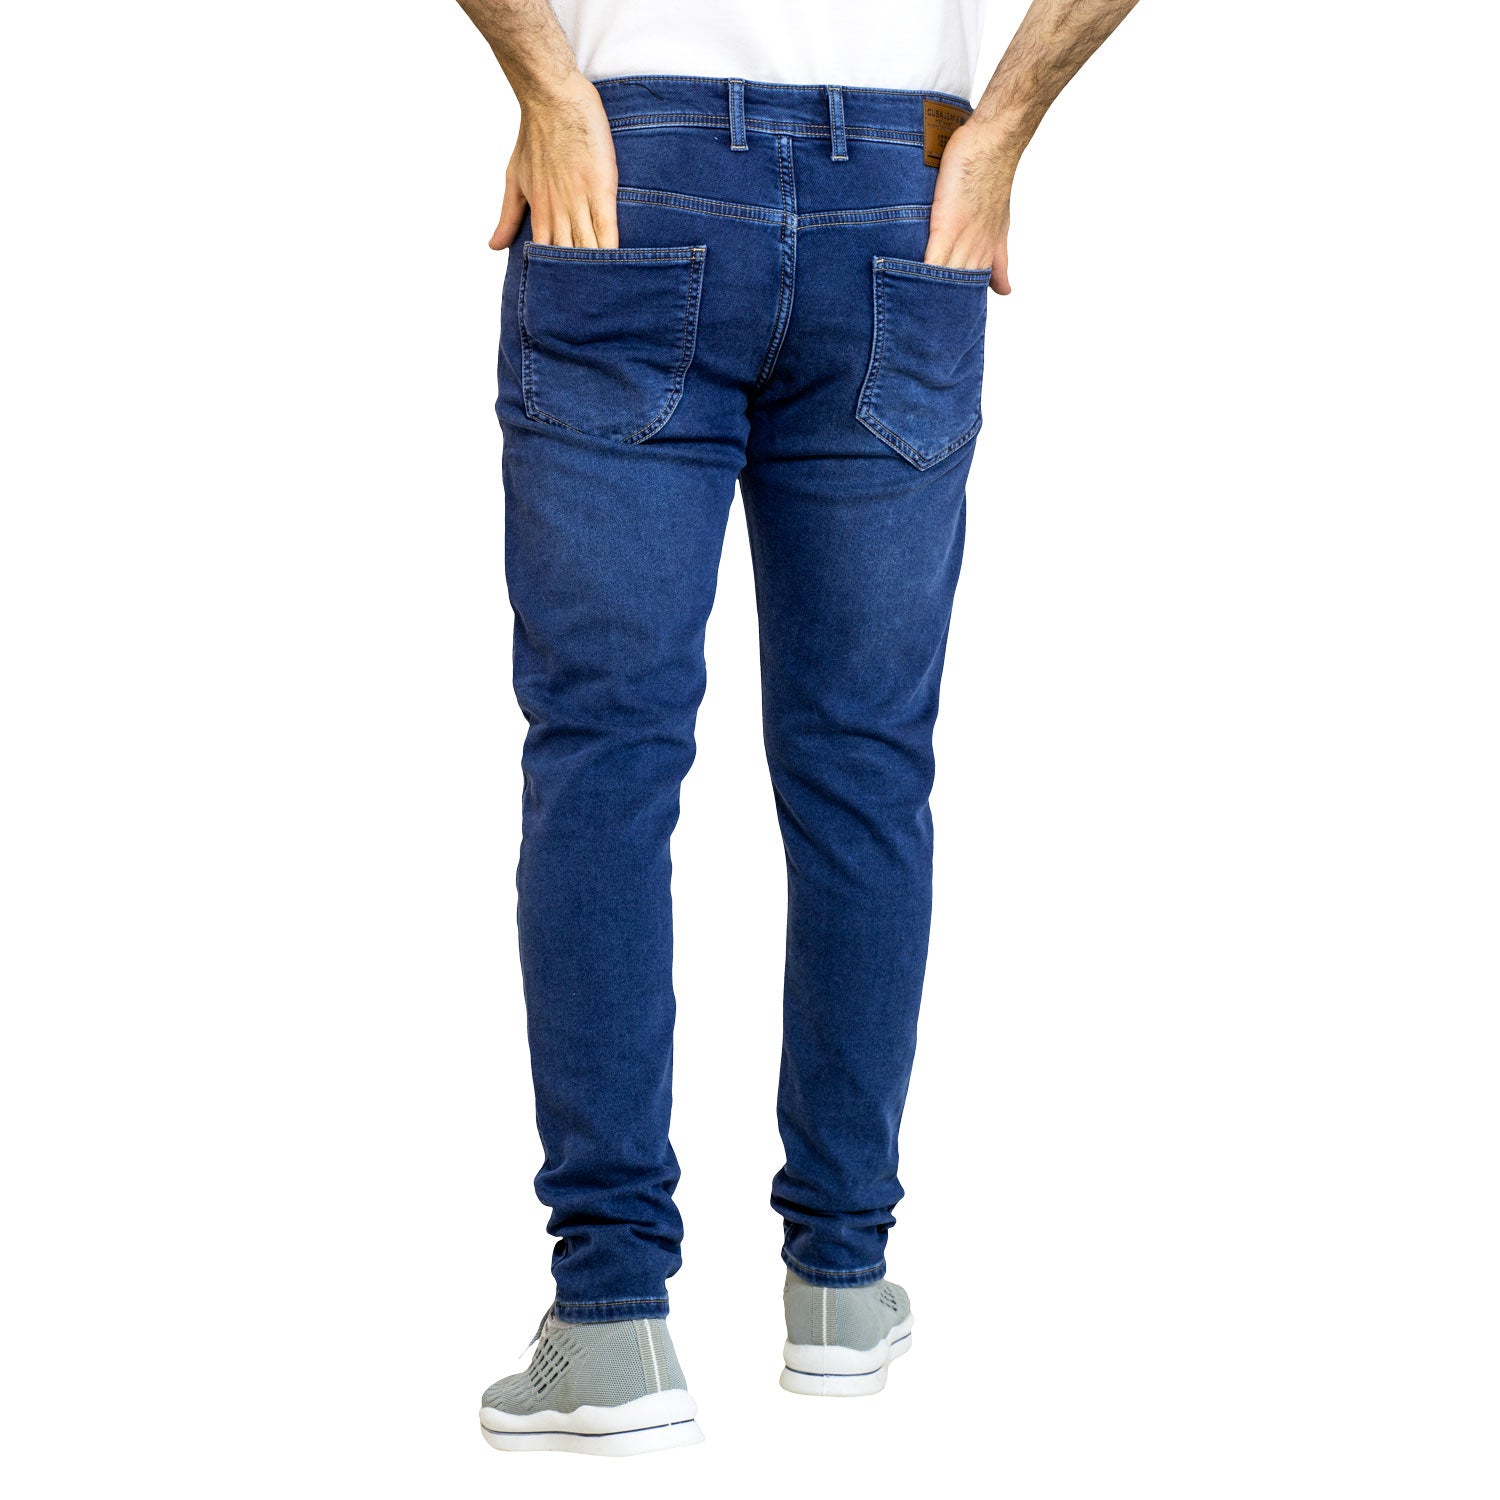 24GM-9-1-464066-16-بنطلون جينز - فينسيا Jeans-Pant, بنطلون, بنطلون جينز رجالي, Pukkastyle